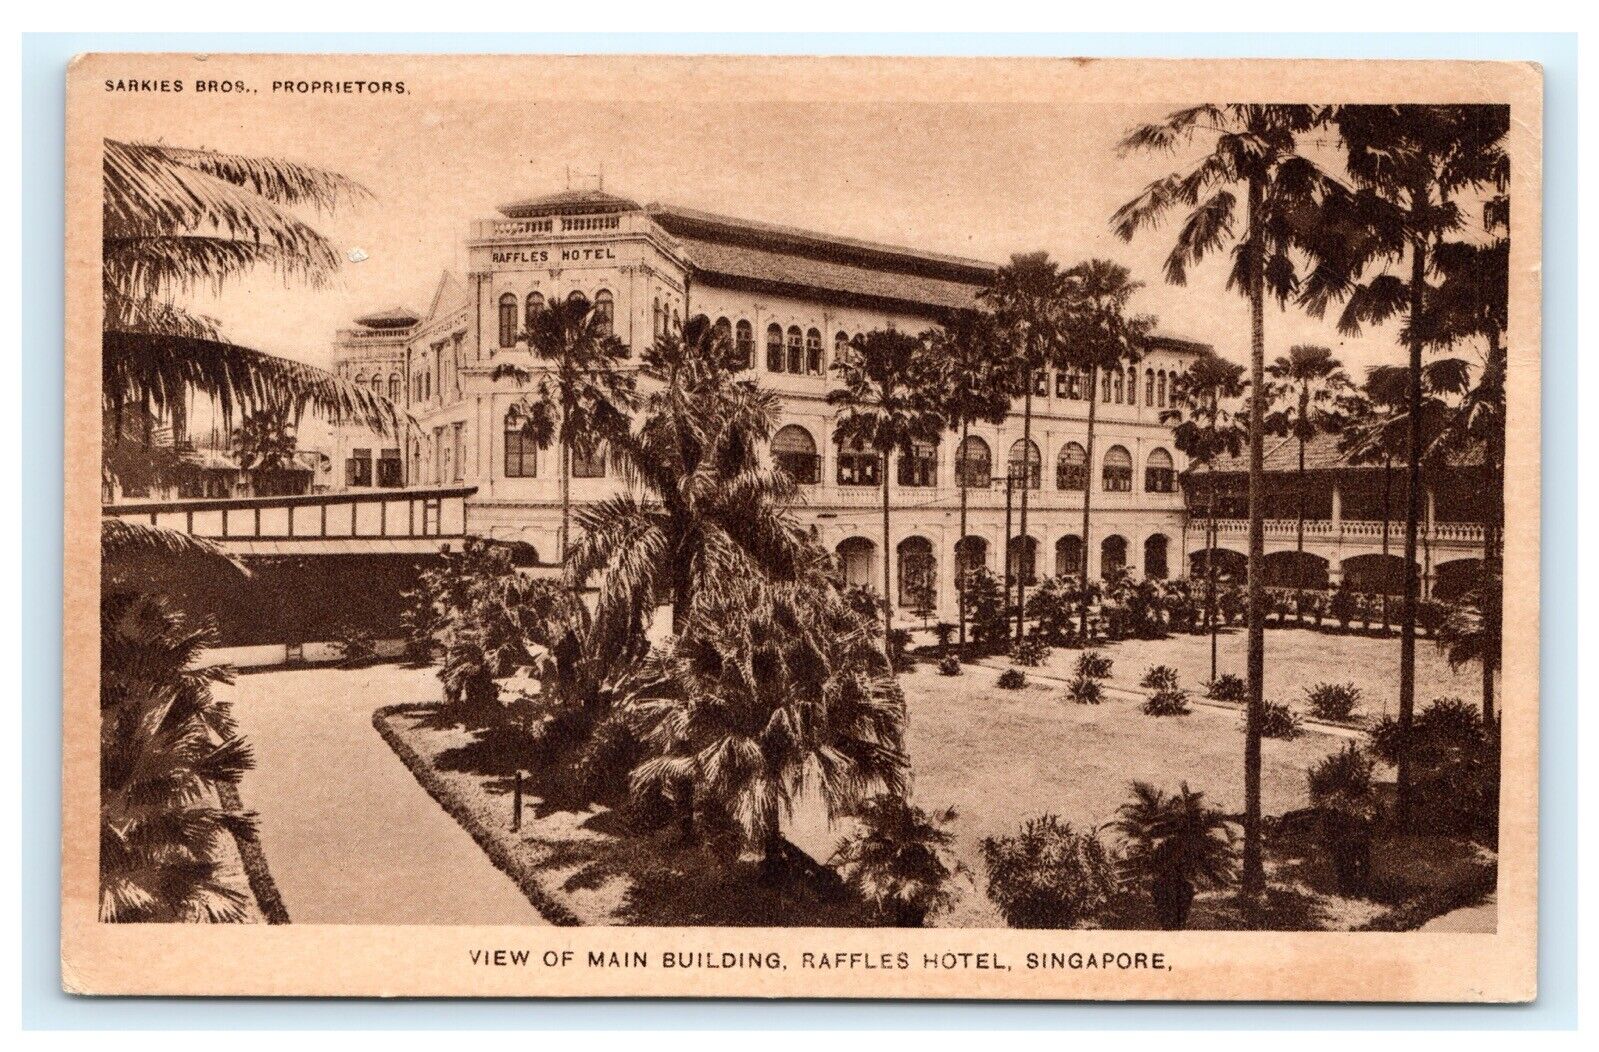 Main Building Raffles Hotel Singapore Sarkies Brothers Proprietors Postcard D2 